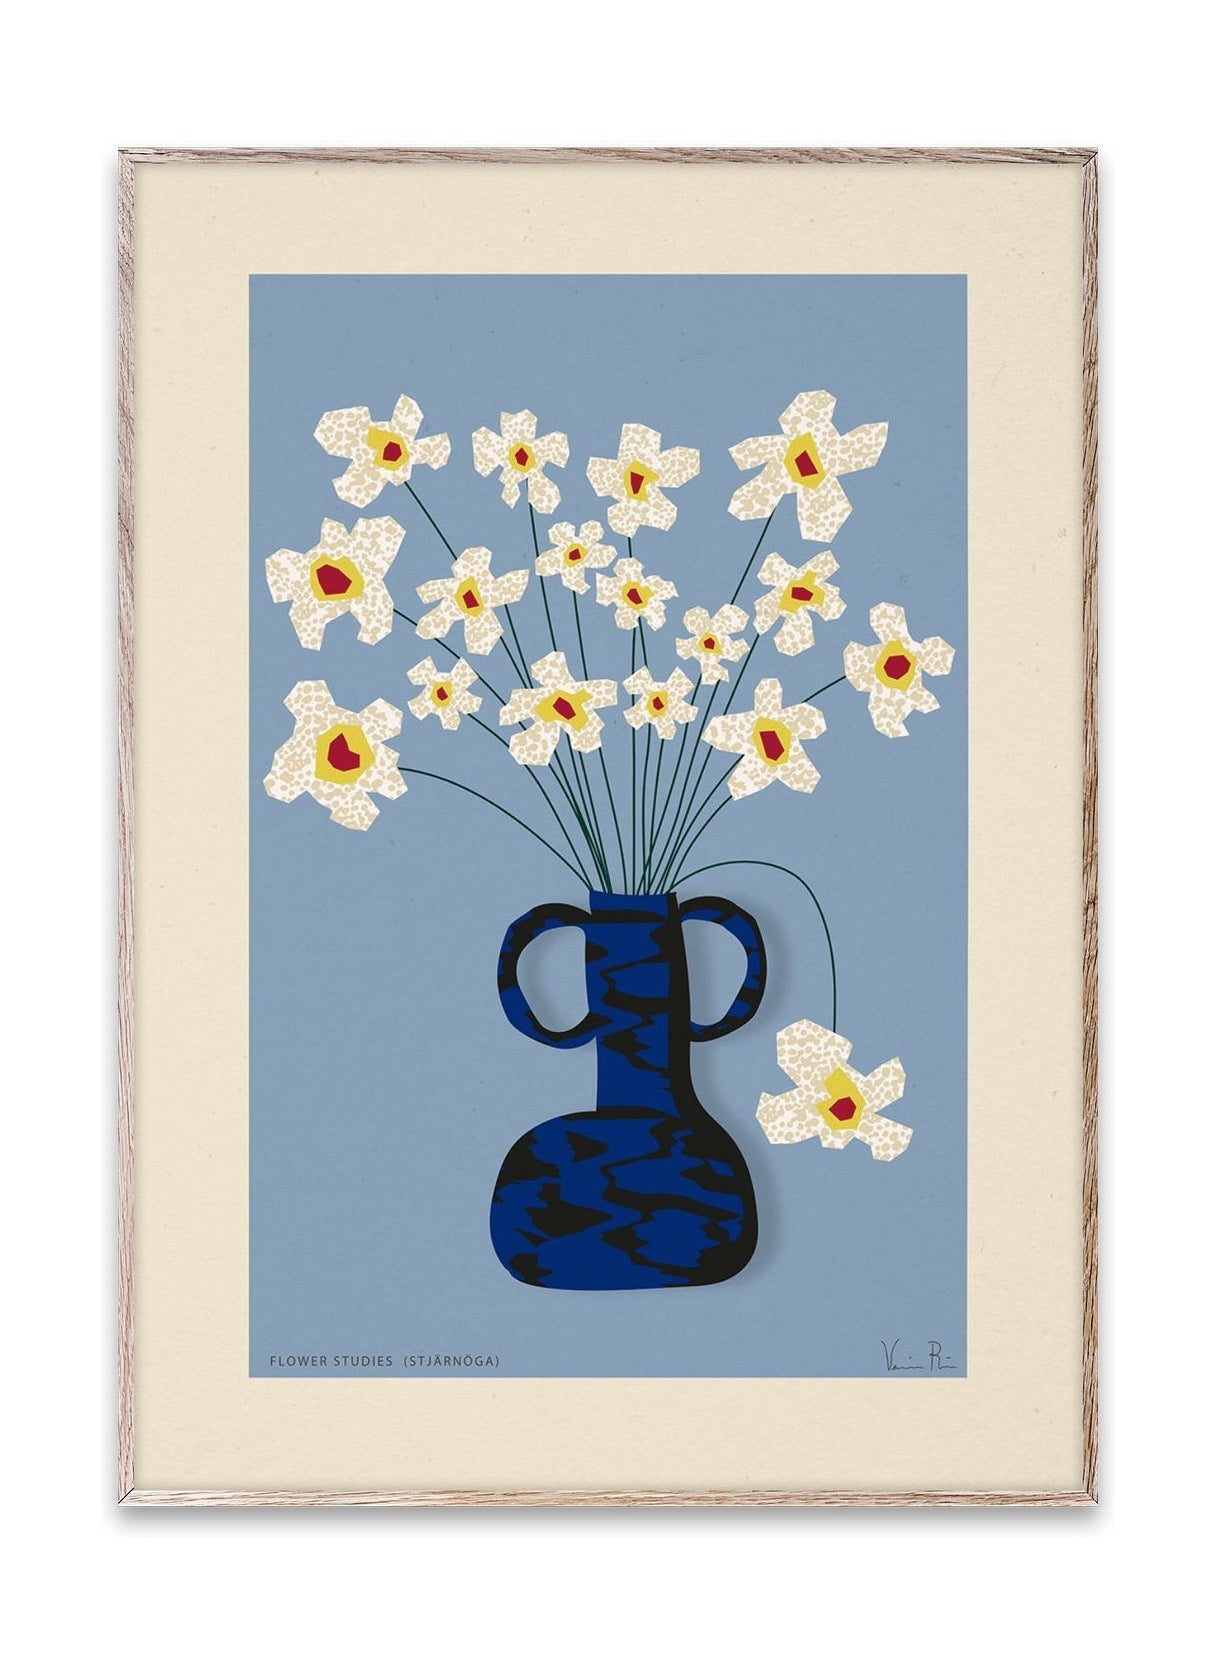 Paper Collective Flower Studies 04 (Stjärnöga) affisch, 30x40 cm